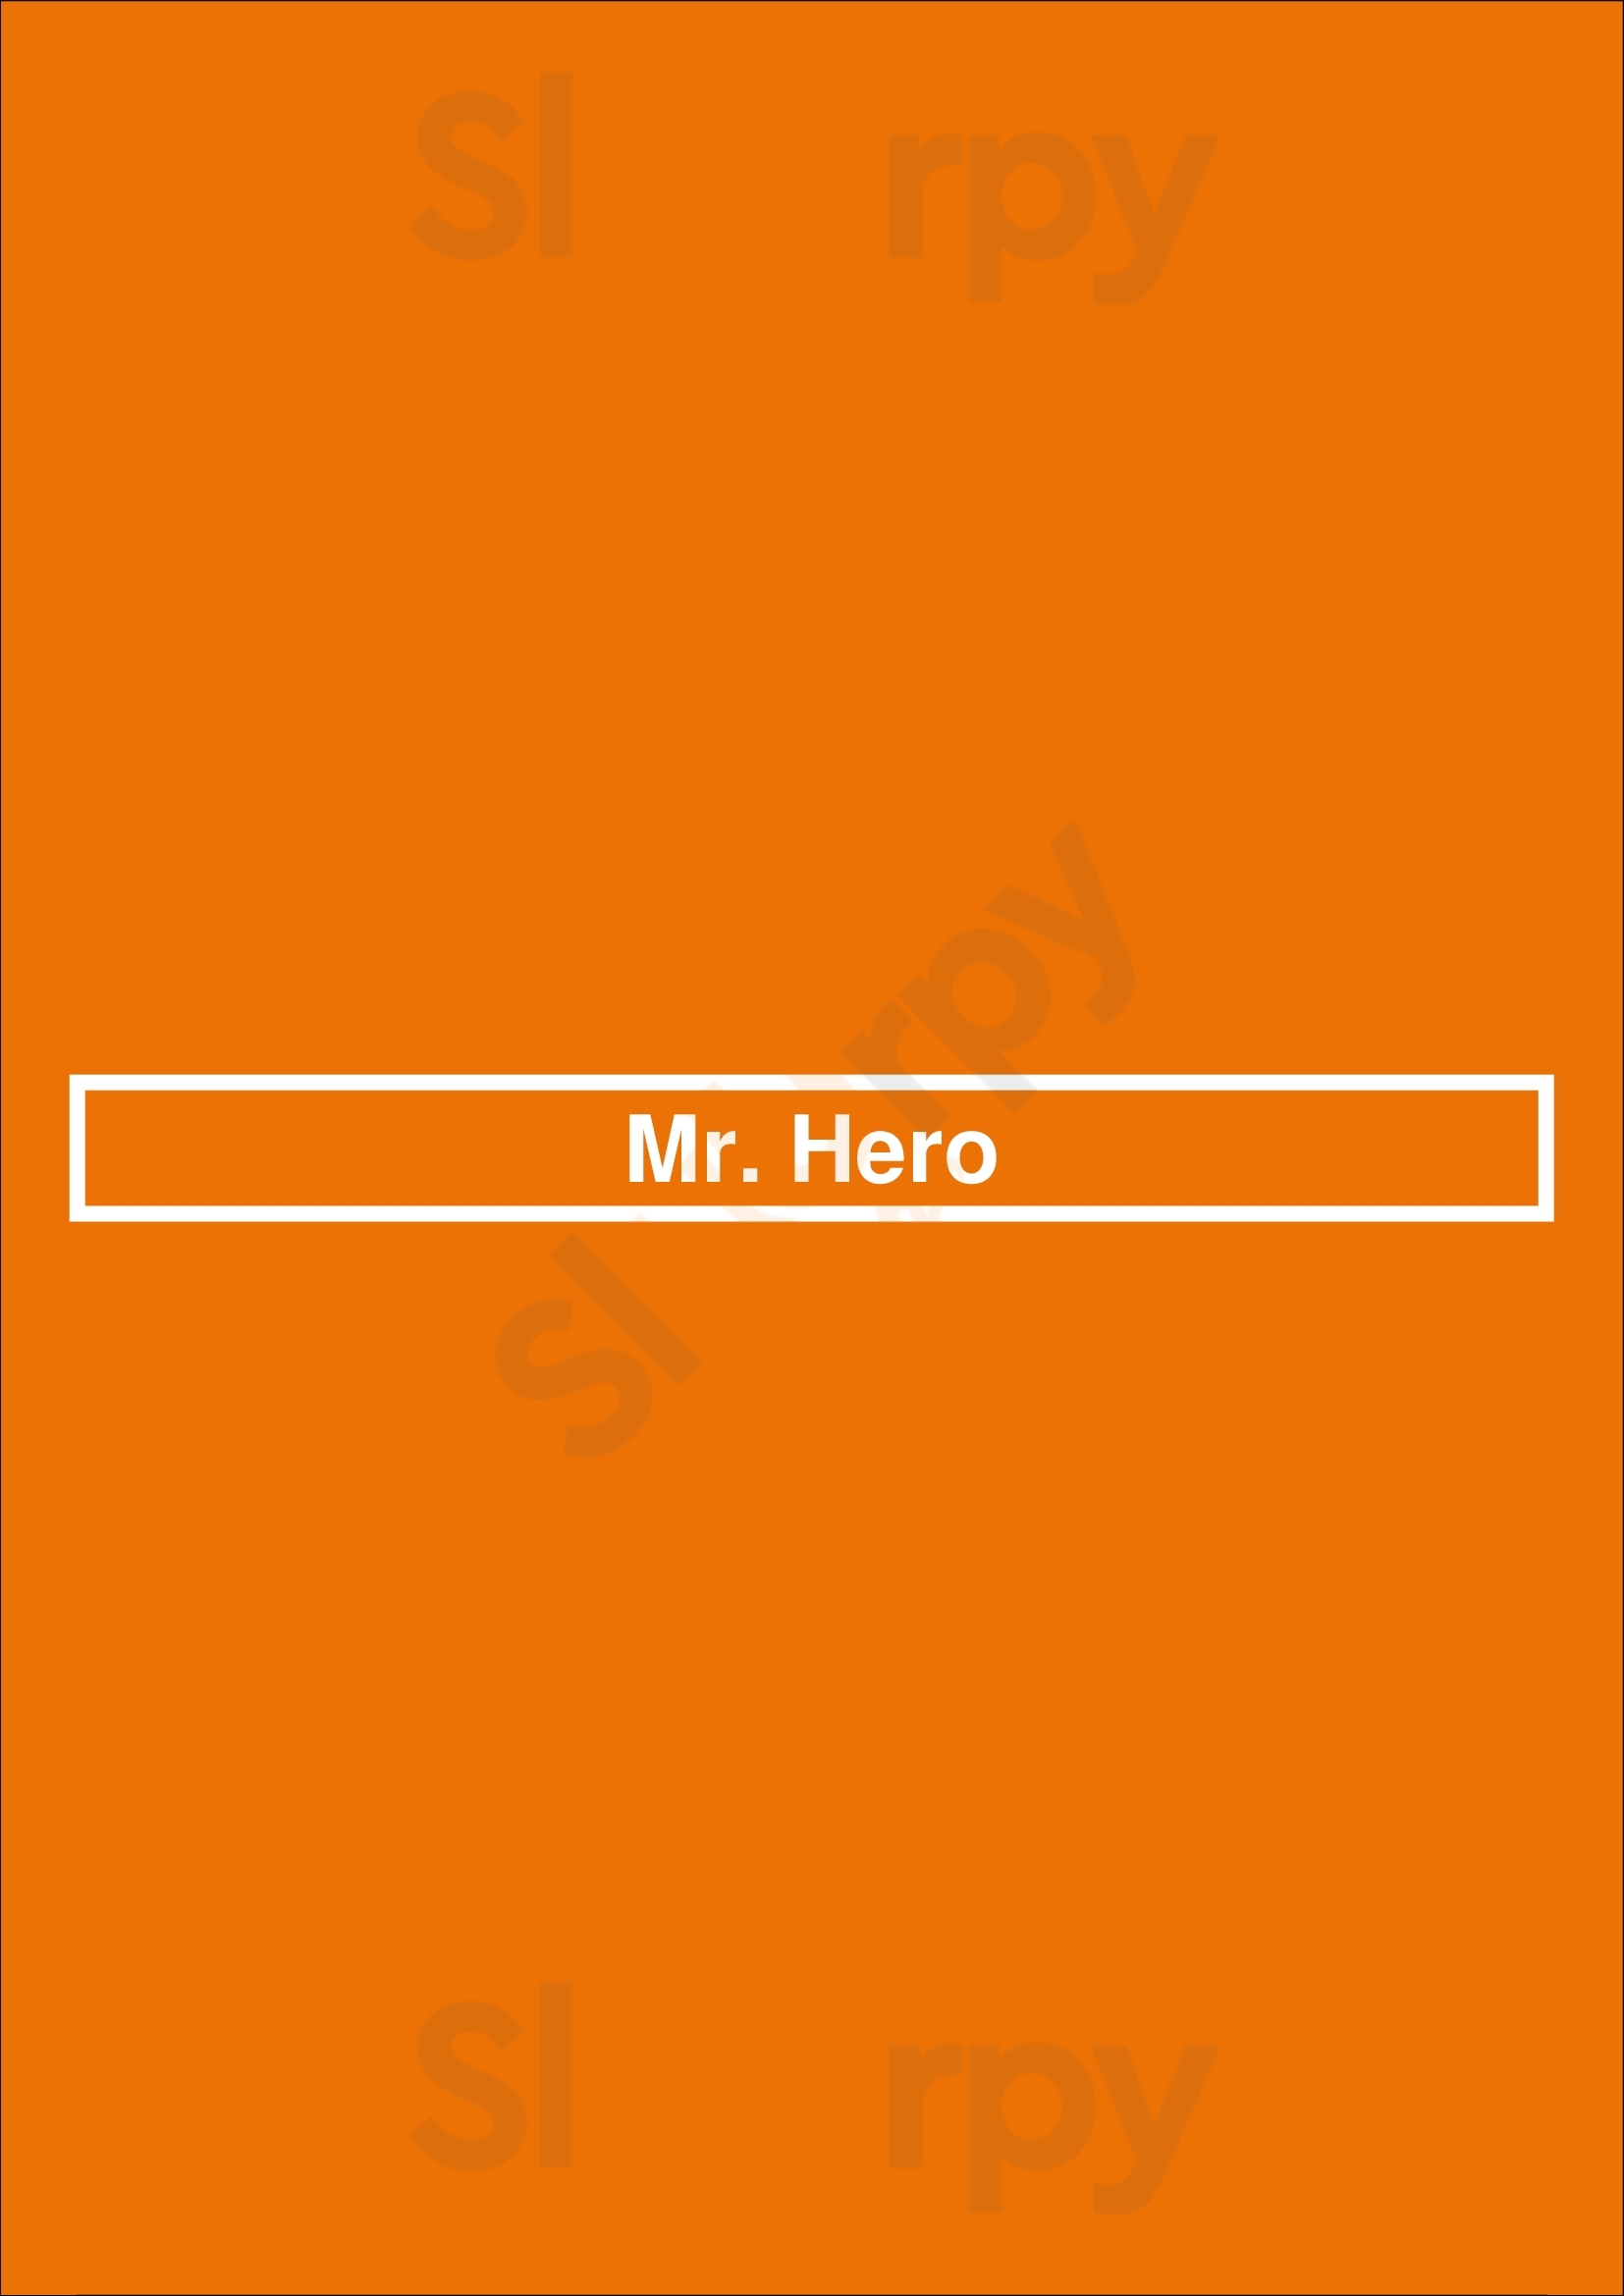 Mr. Hero Cleveland Menu - 1